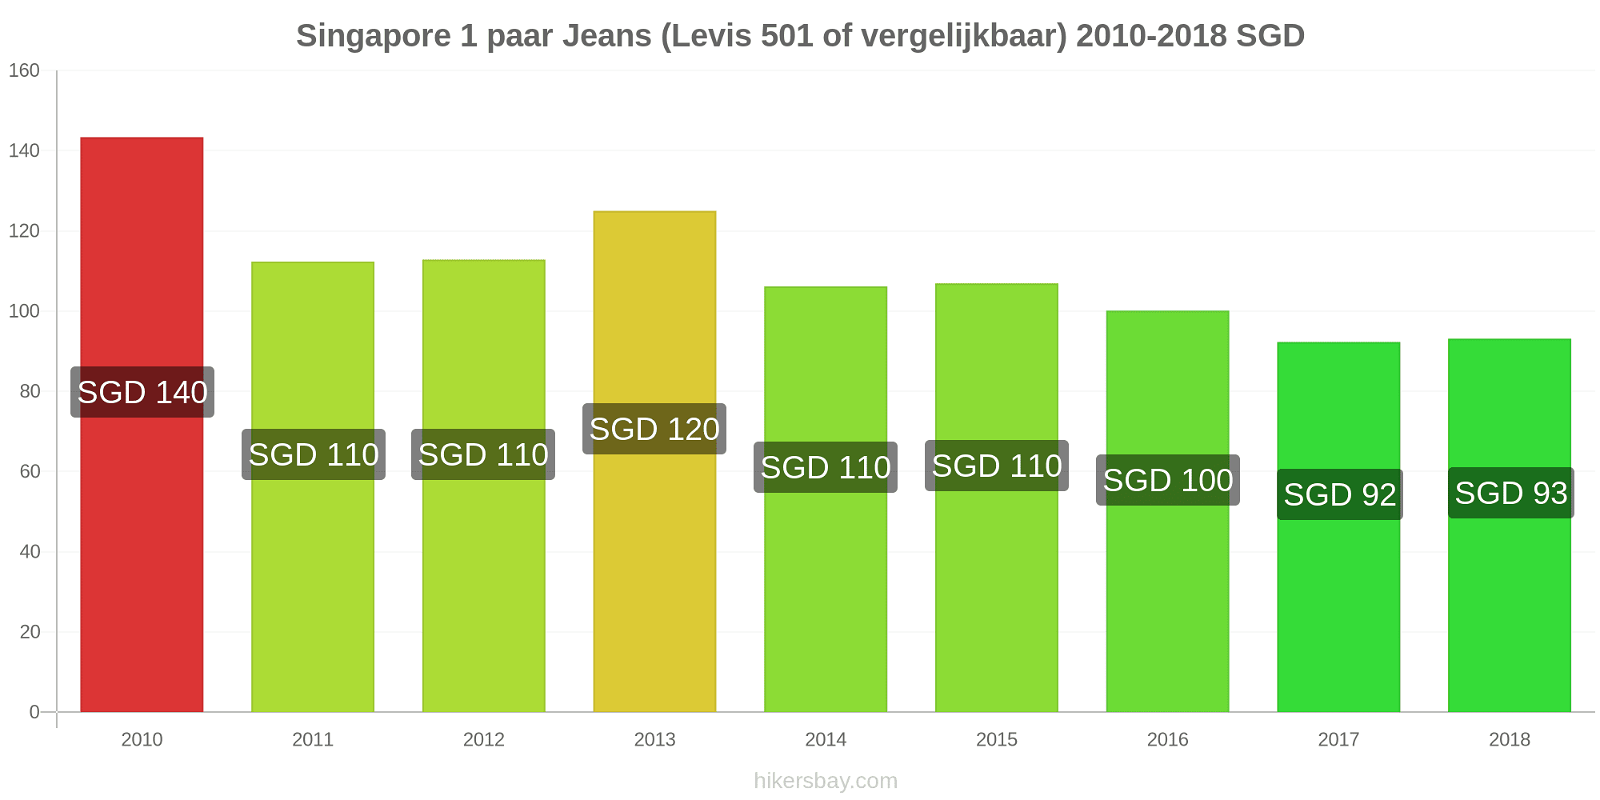 Singapore prijswijzigingen 1 paar jeans (Levis 501 of vergelijkbaar) hikersbay.com